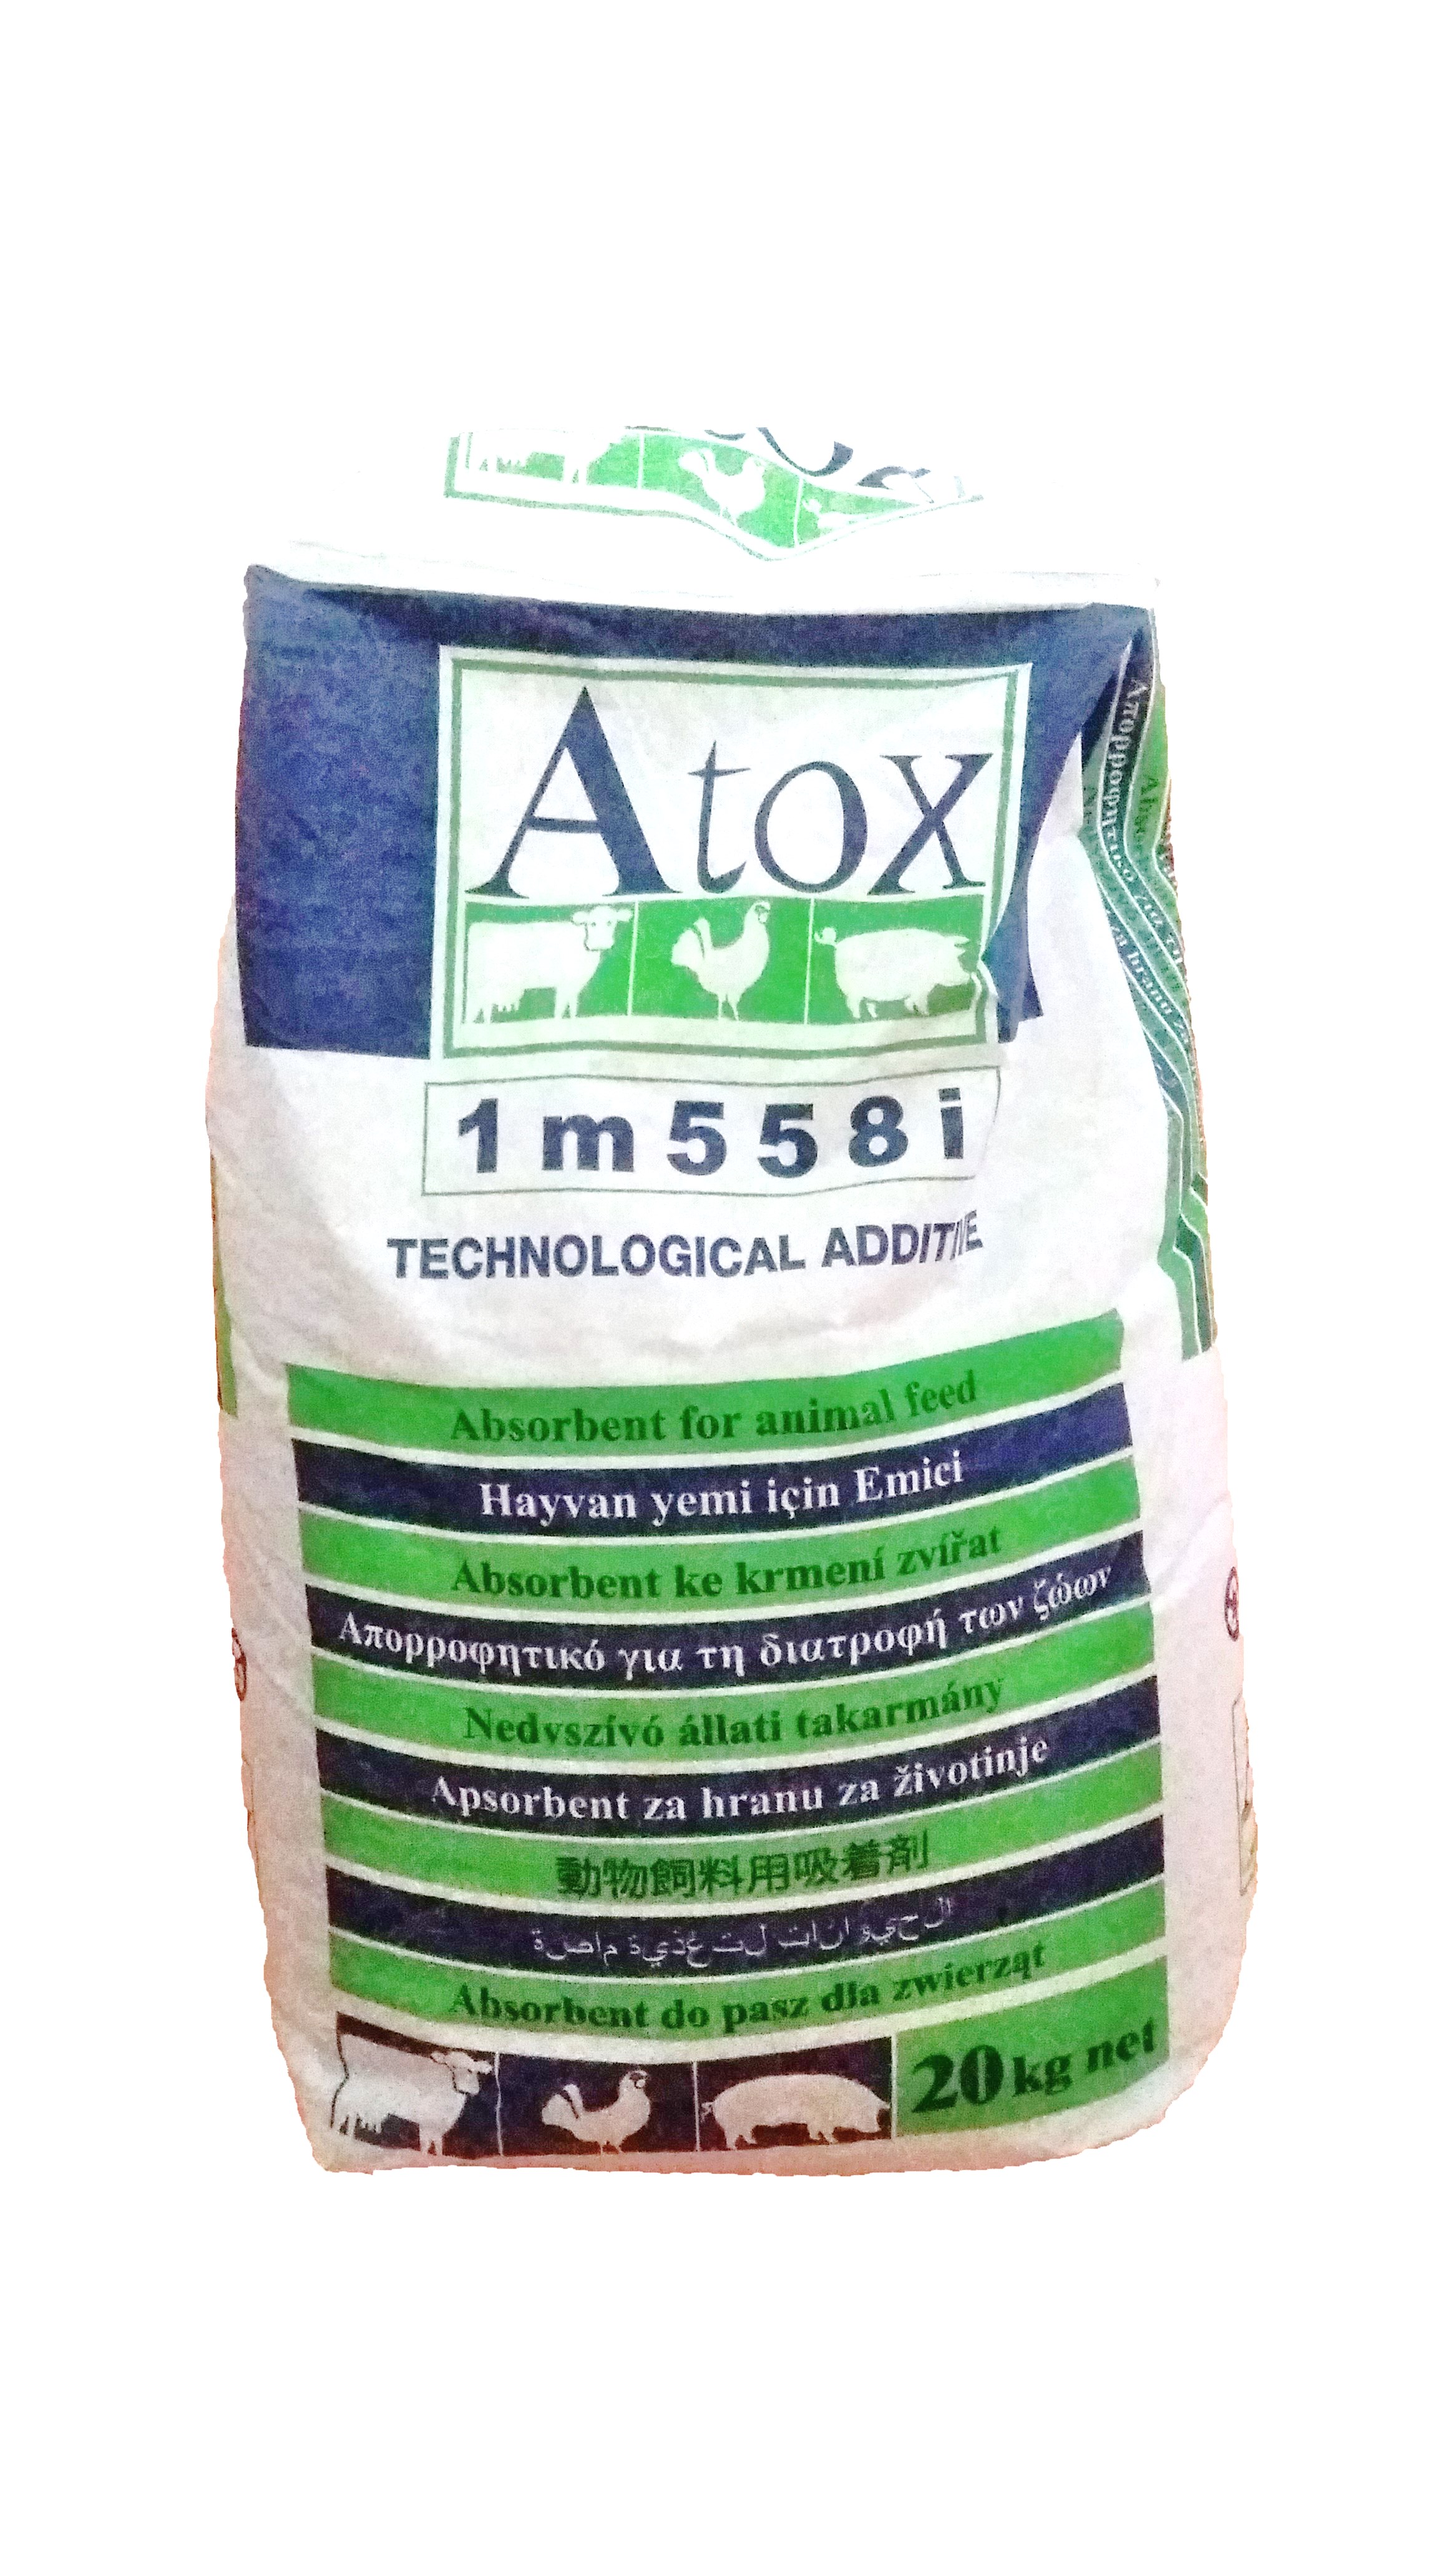 Atox (Απορροφητικό για την τροφή), 20 kg